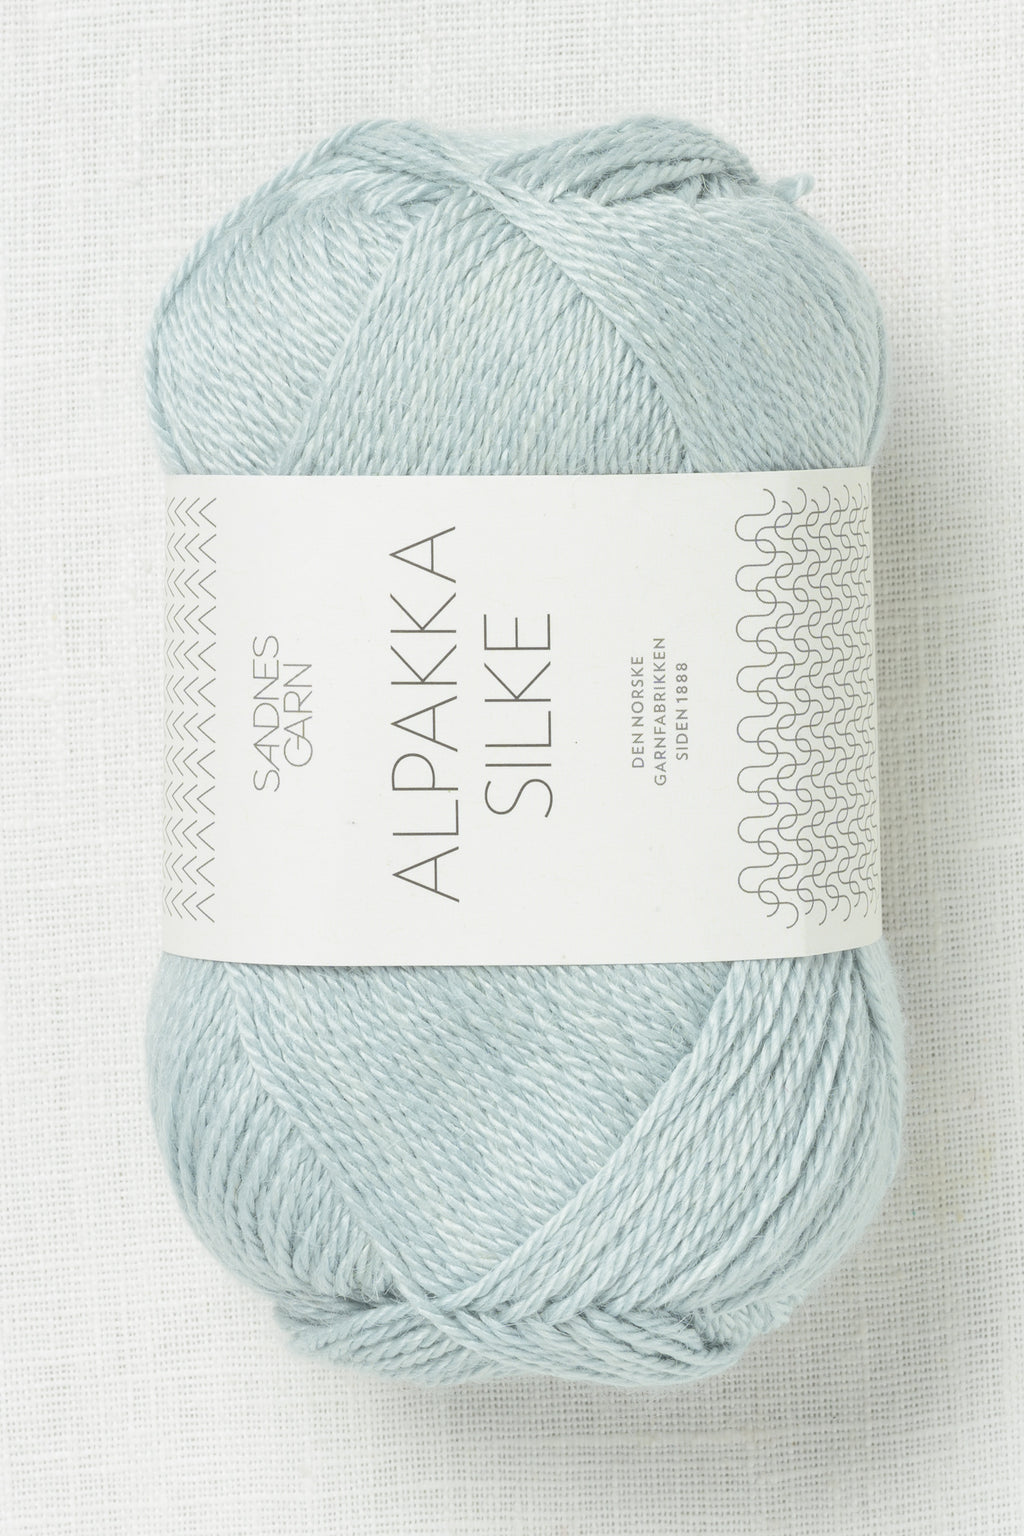 Sandnes Garn Alpakka Silke 7521 Light Gray Blue